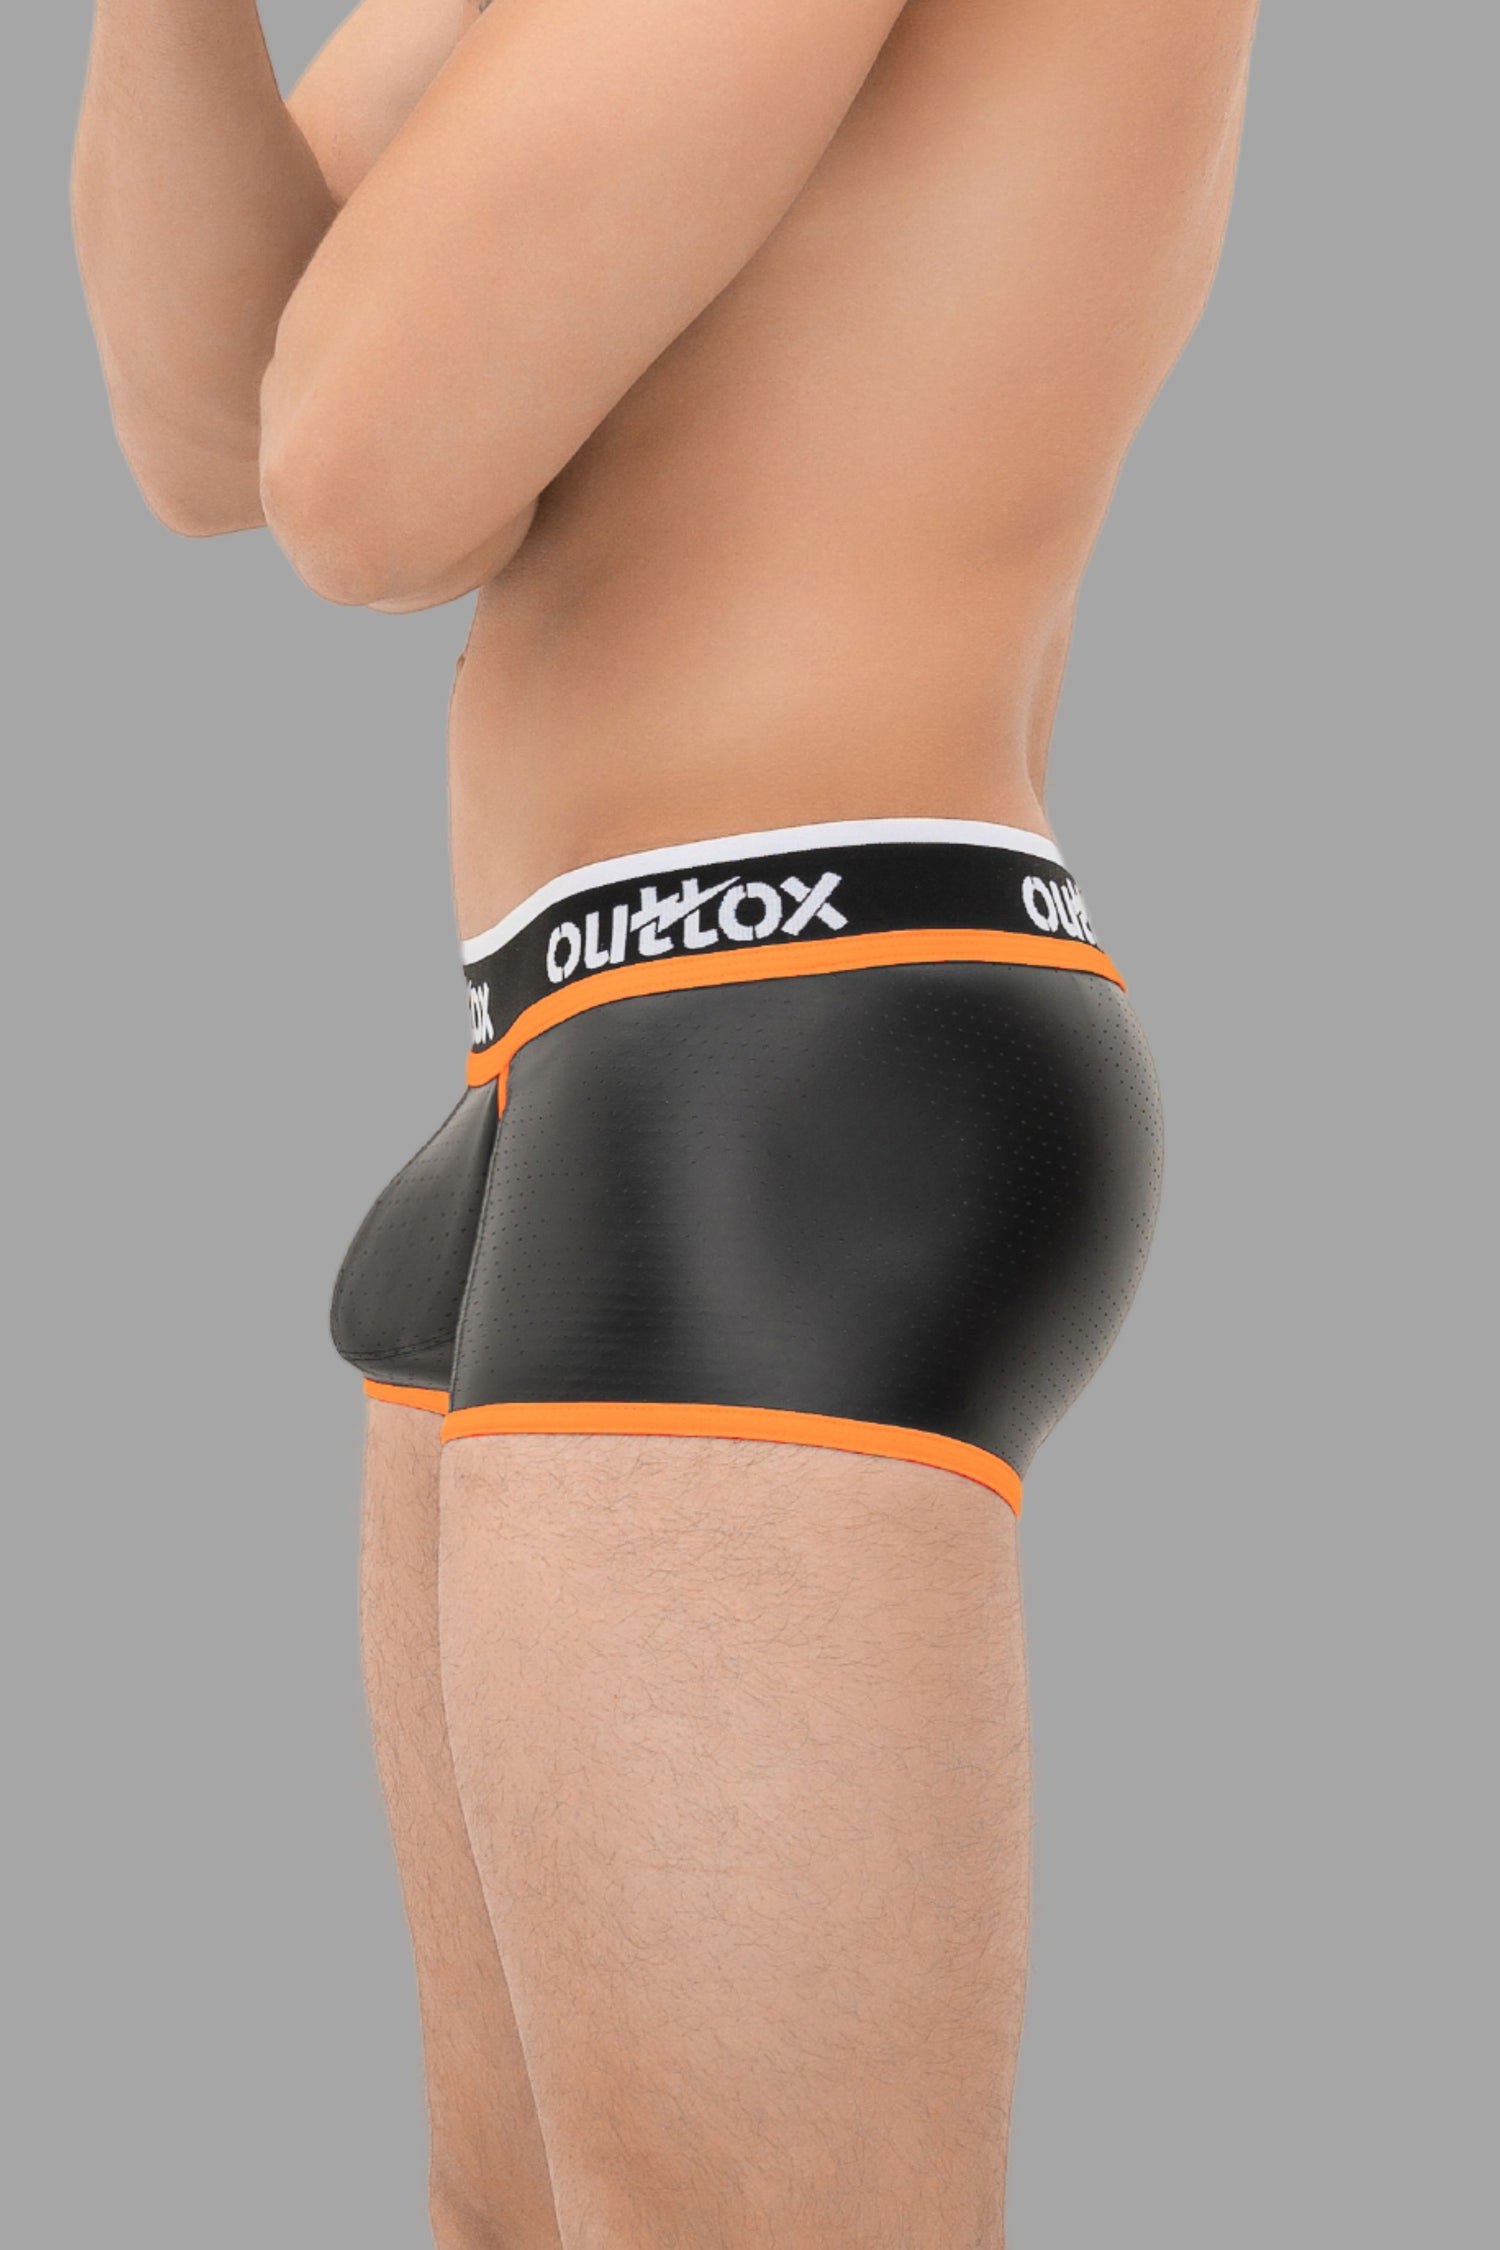 Outtox. Gewickelte Shorts mit Druckknopfverschluss. Schwarz+Orange